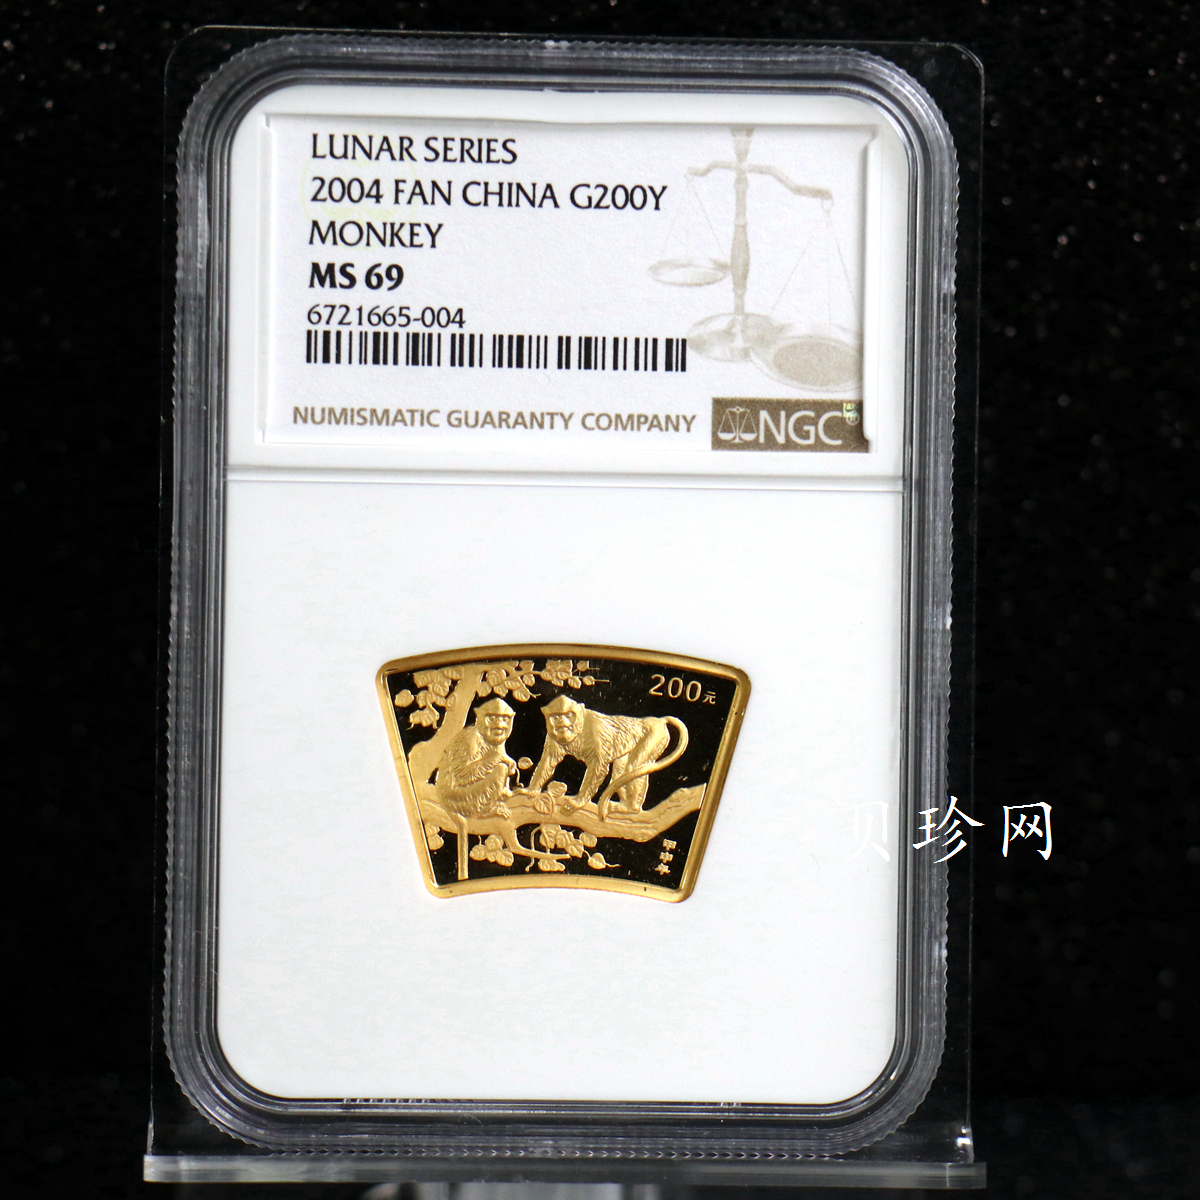 【040204】2004中国甲申（猴）年金纪念币-双猴图1/2盎司扇形普制金币